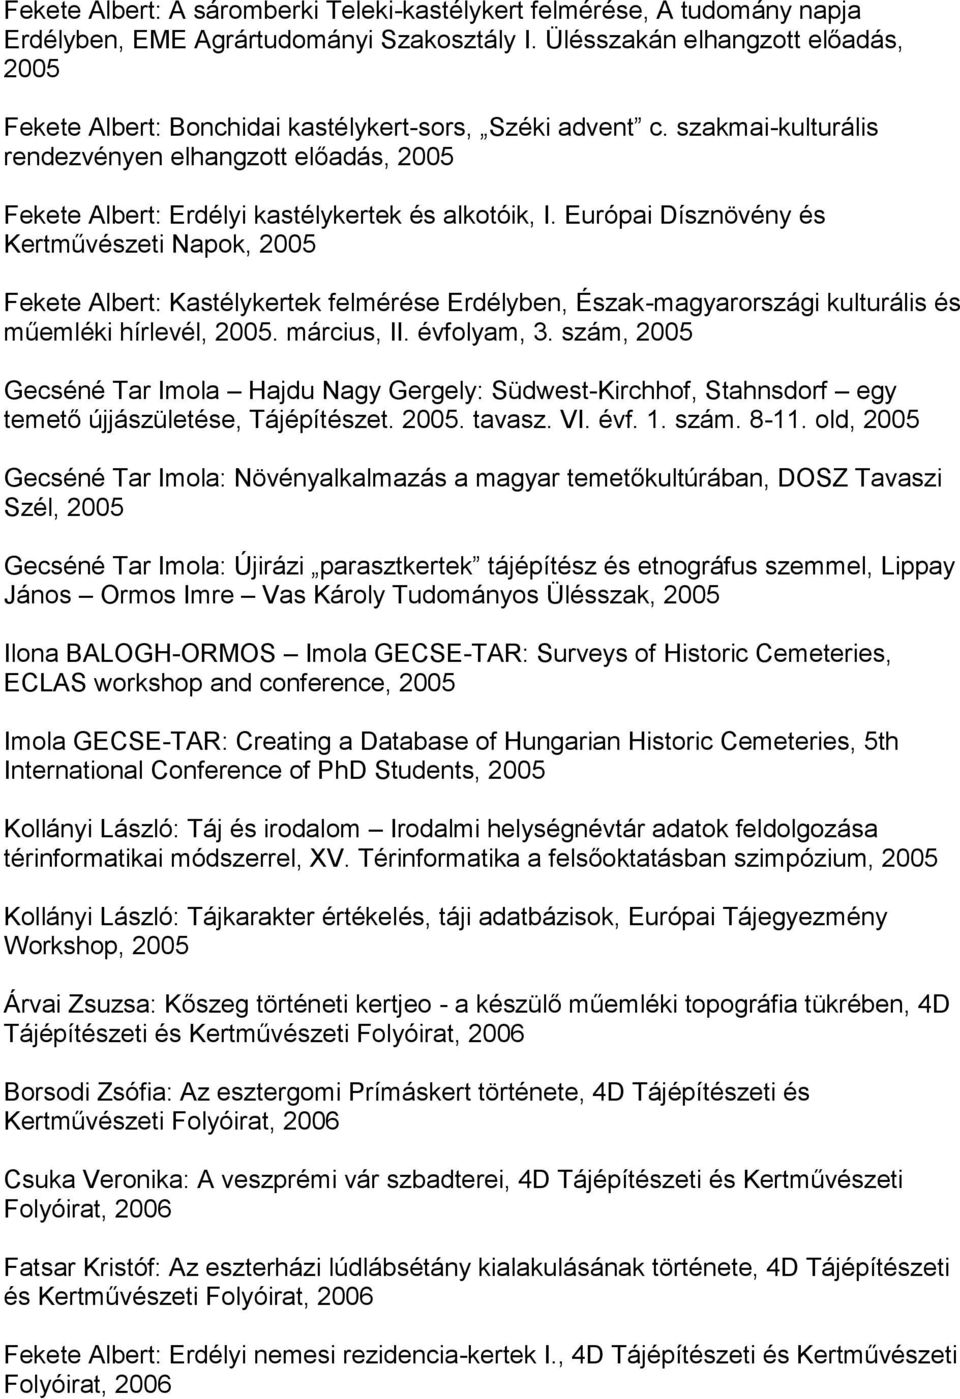 szakmai-kulturális rendezvényen elhangzott előadás, 2005 Fekete Albert: Erdélyi kastélykertek és alkotóik, I.